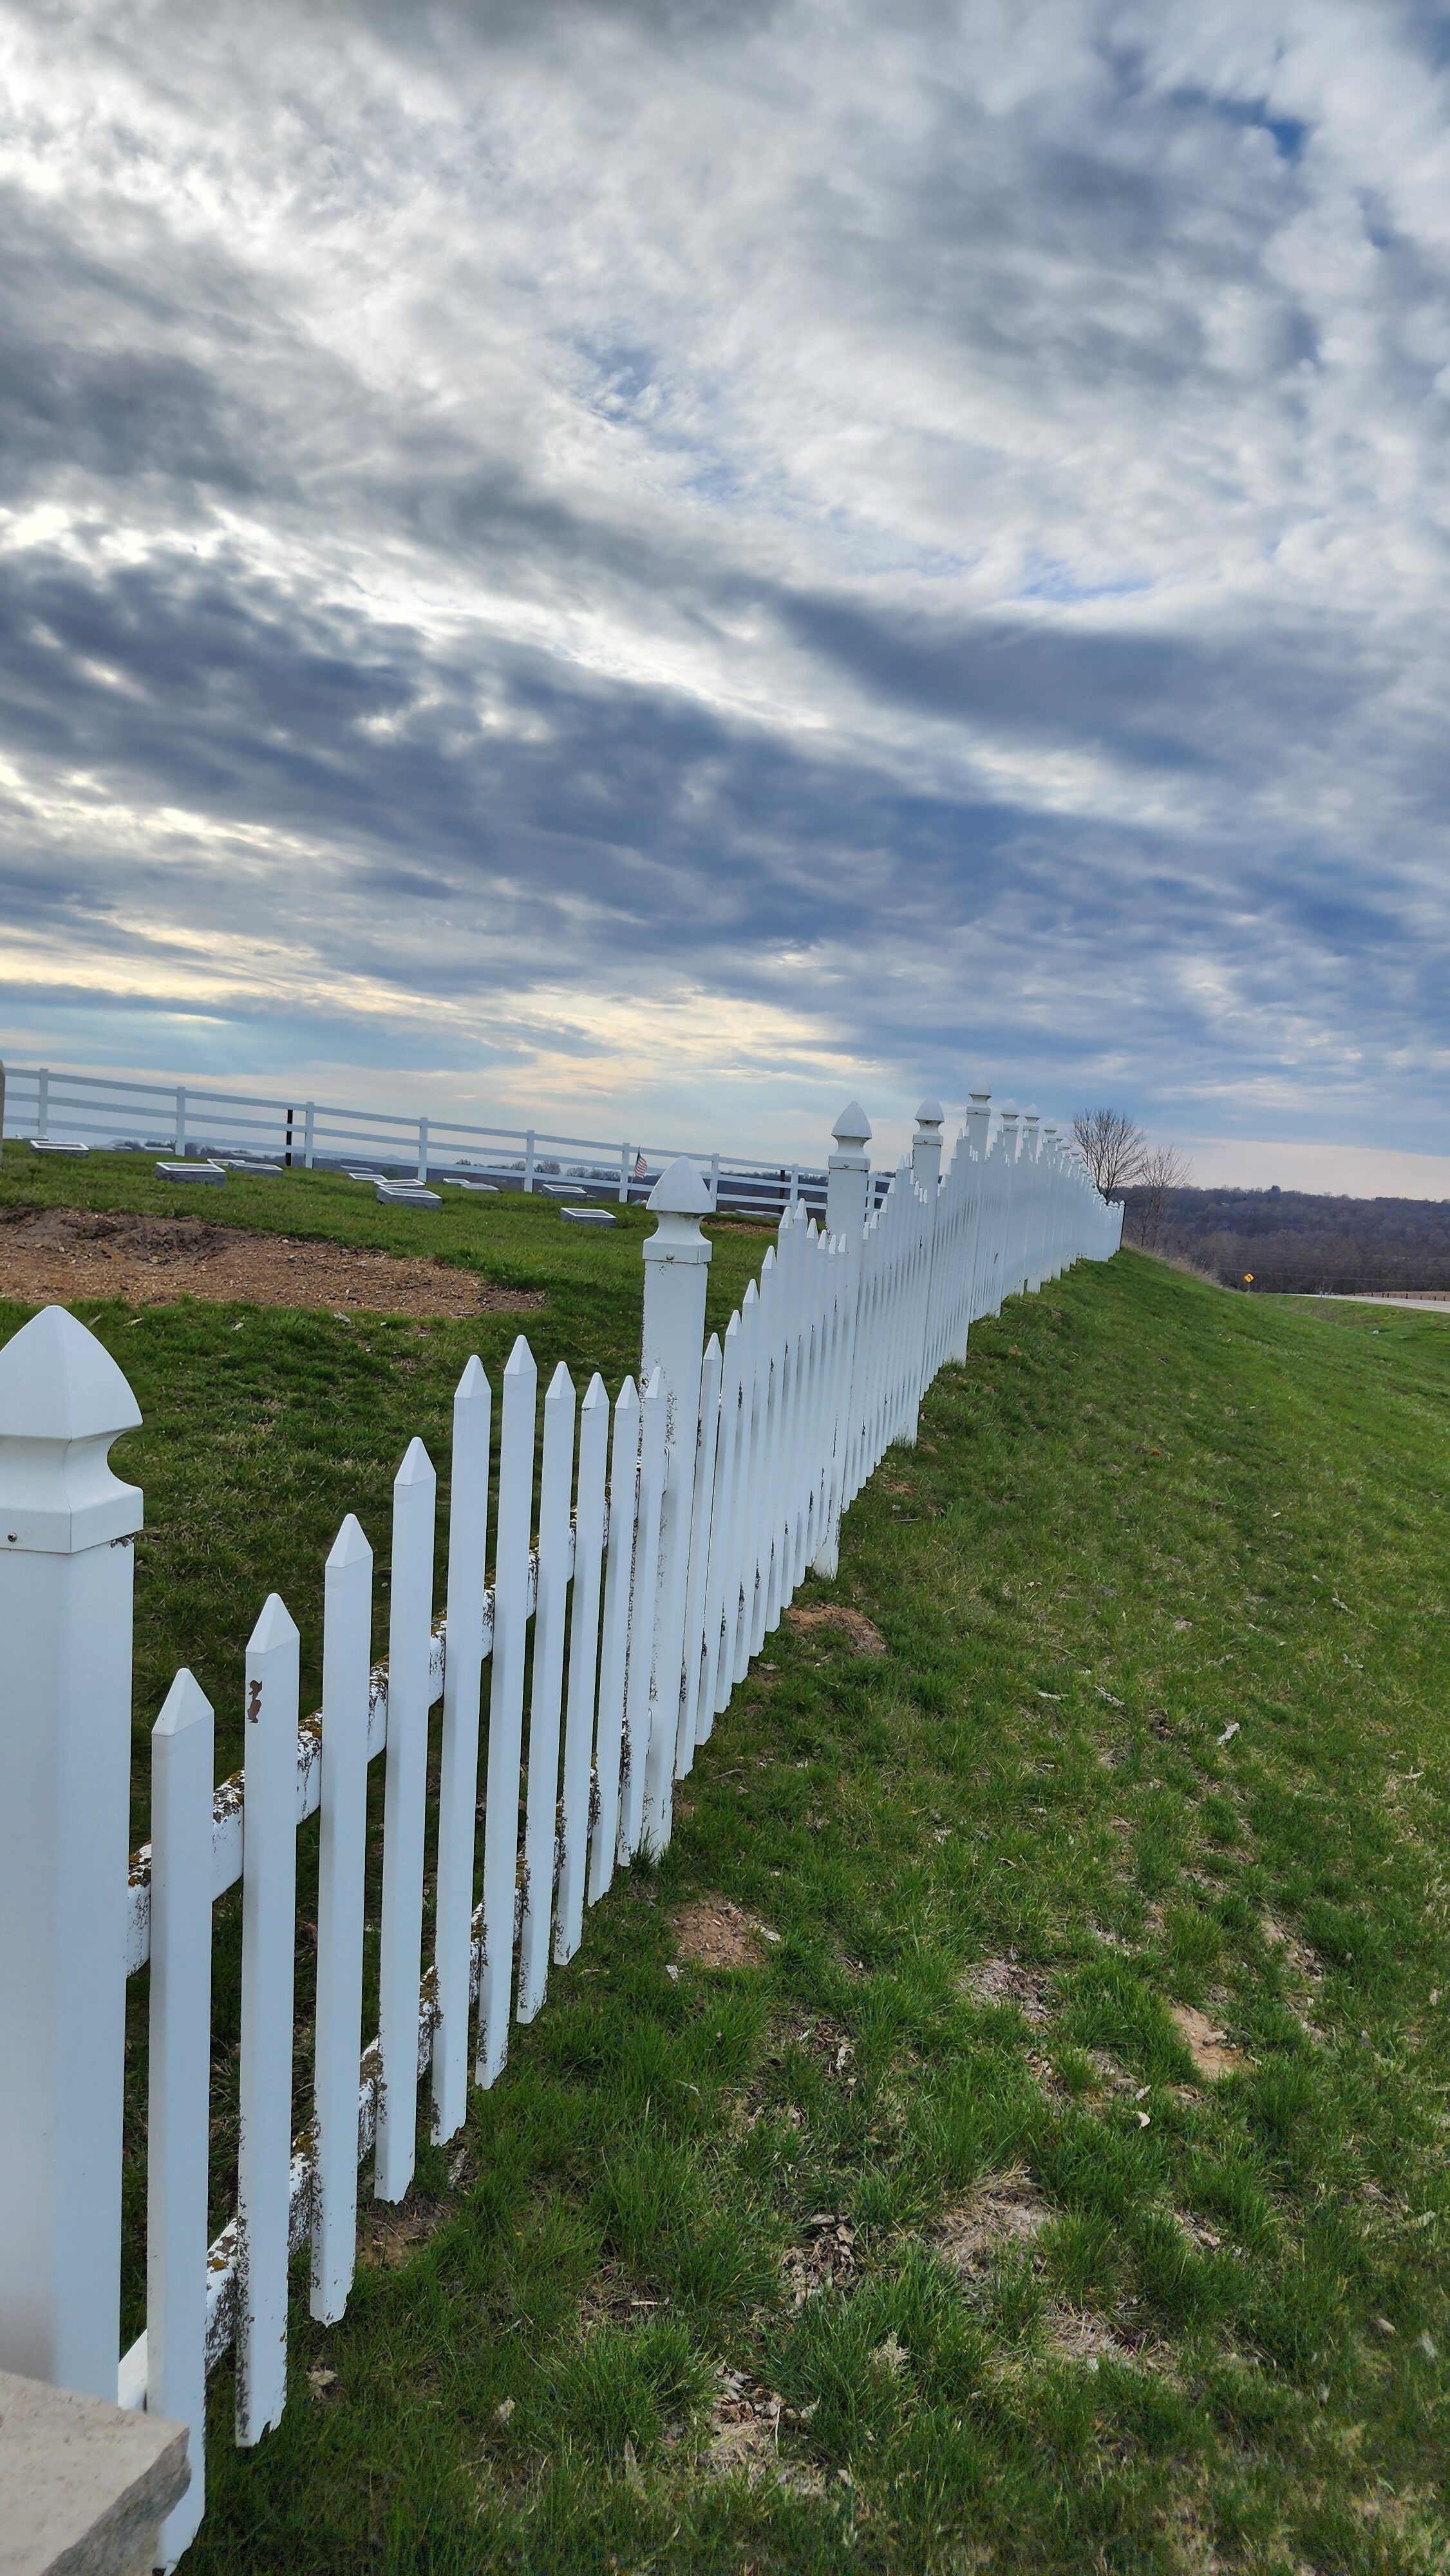 White Iowa fence